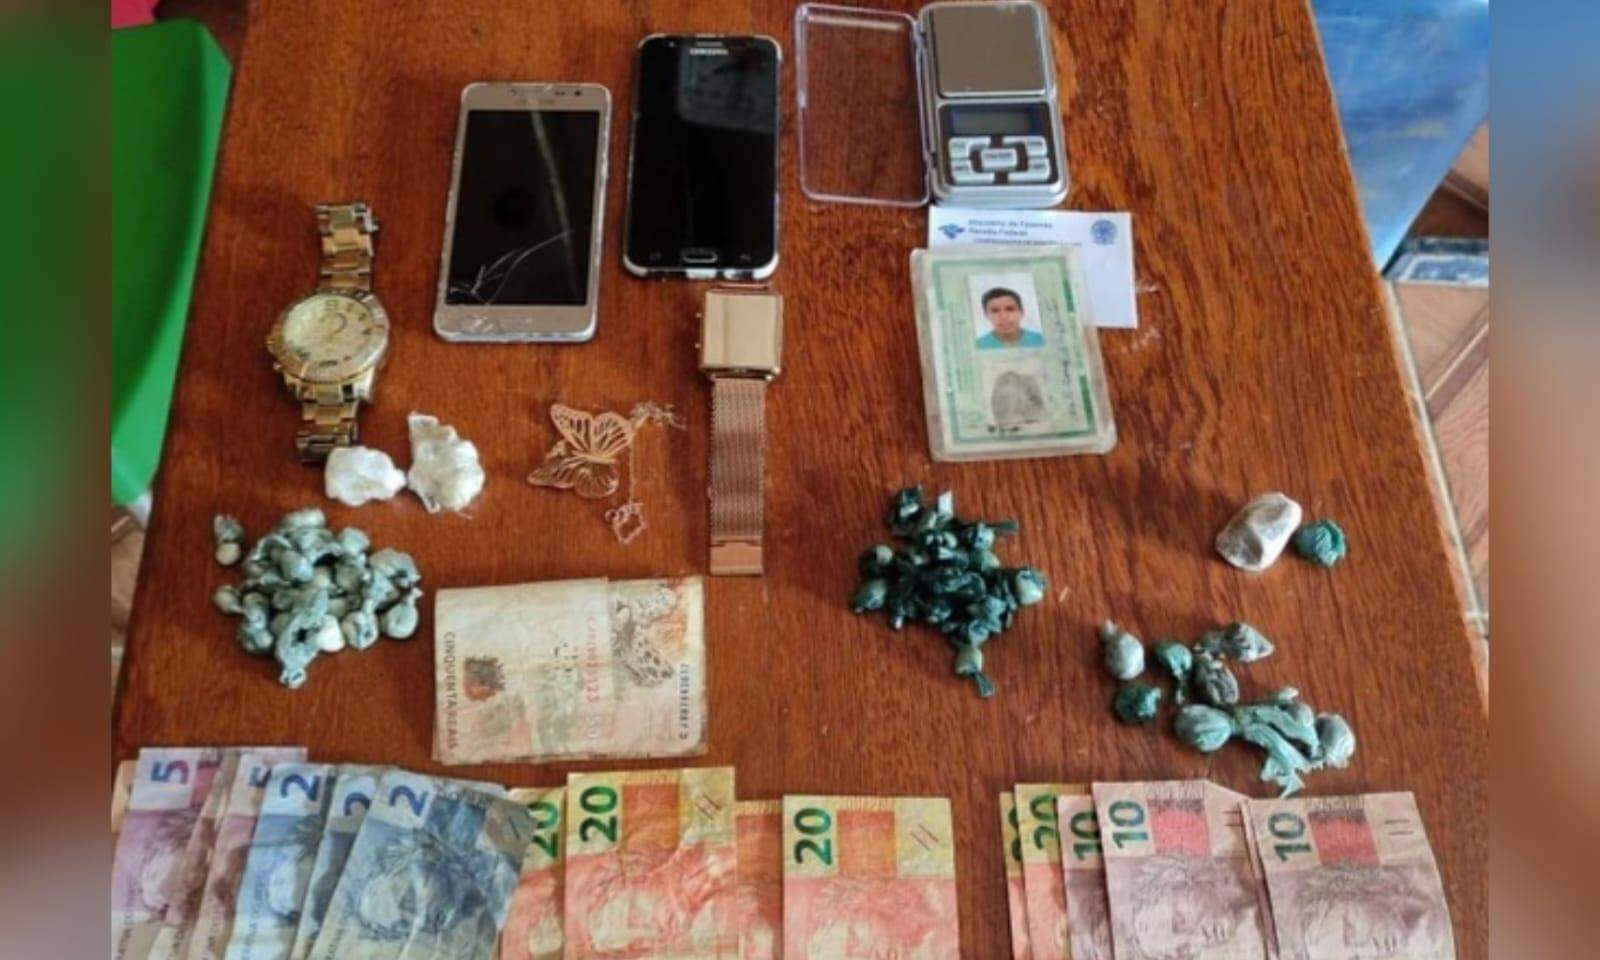 PM identifica suspeitos de roubo e tráfico de drogas por imagens de câmera de segurança